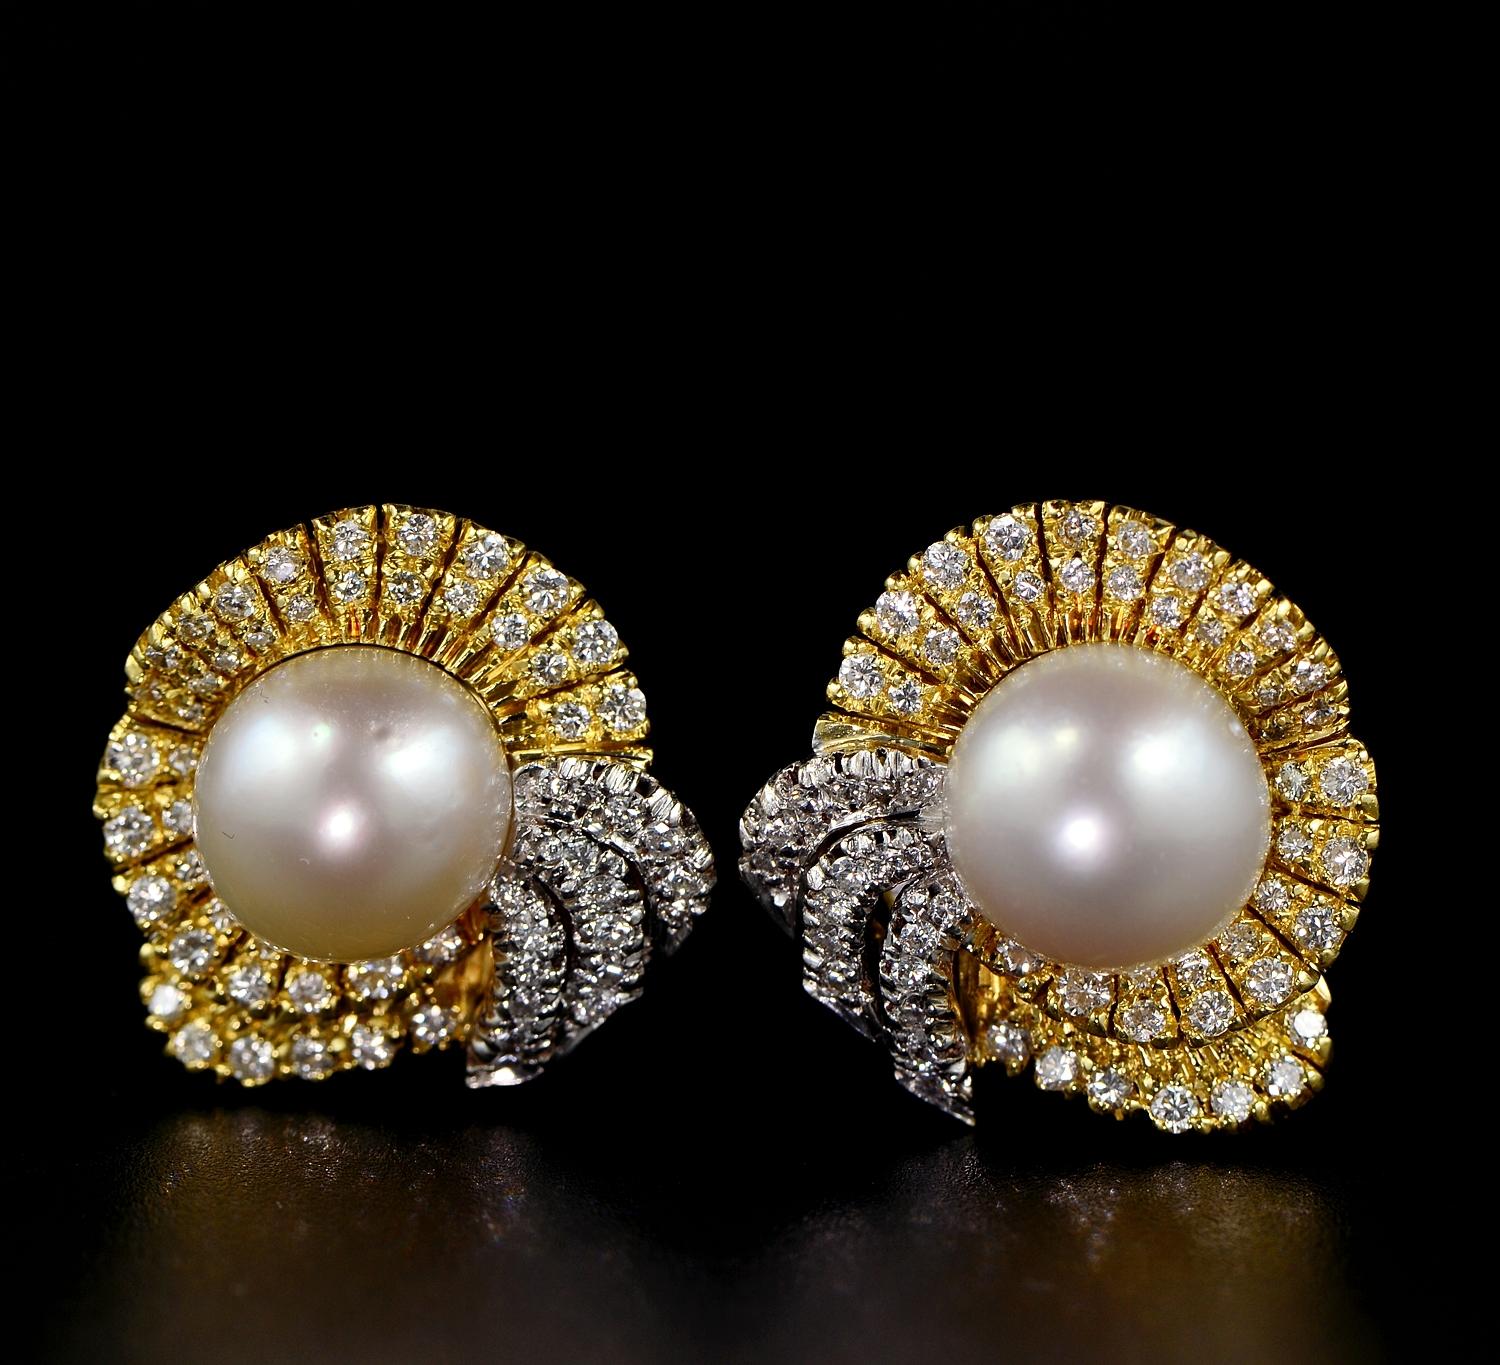 Dieses charmante Paar Perlen- und Diamant-Ohrringe ist 1945 ca.
Gekonnt handgefertigt aus massivem 18 Kt Gold von vergangenen Schmuckmeistern in einzigartigem Diamond Bow Design, das den Modetrend der damaligen Zeit als Favorit zum Ausdruck